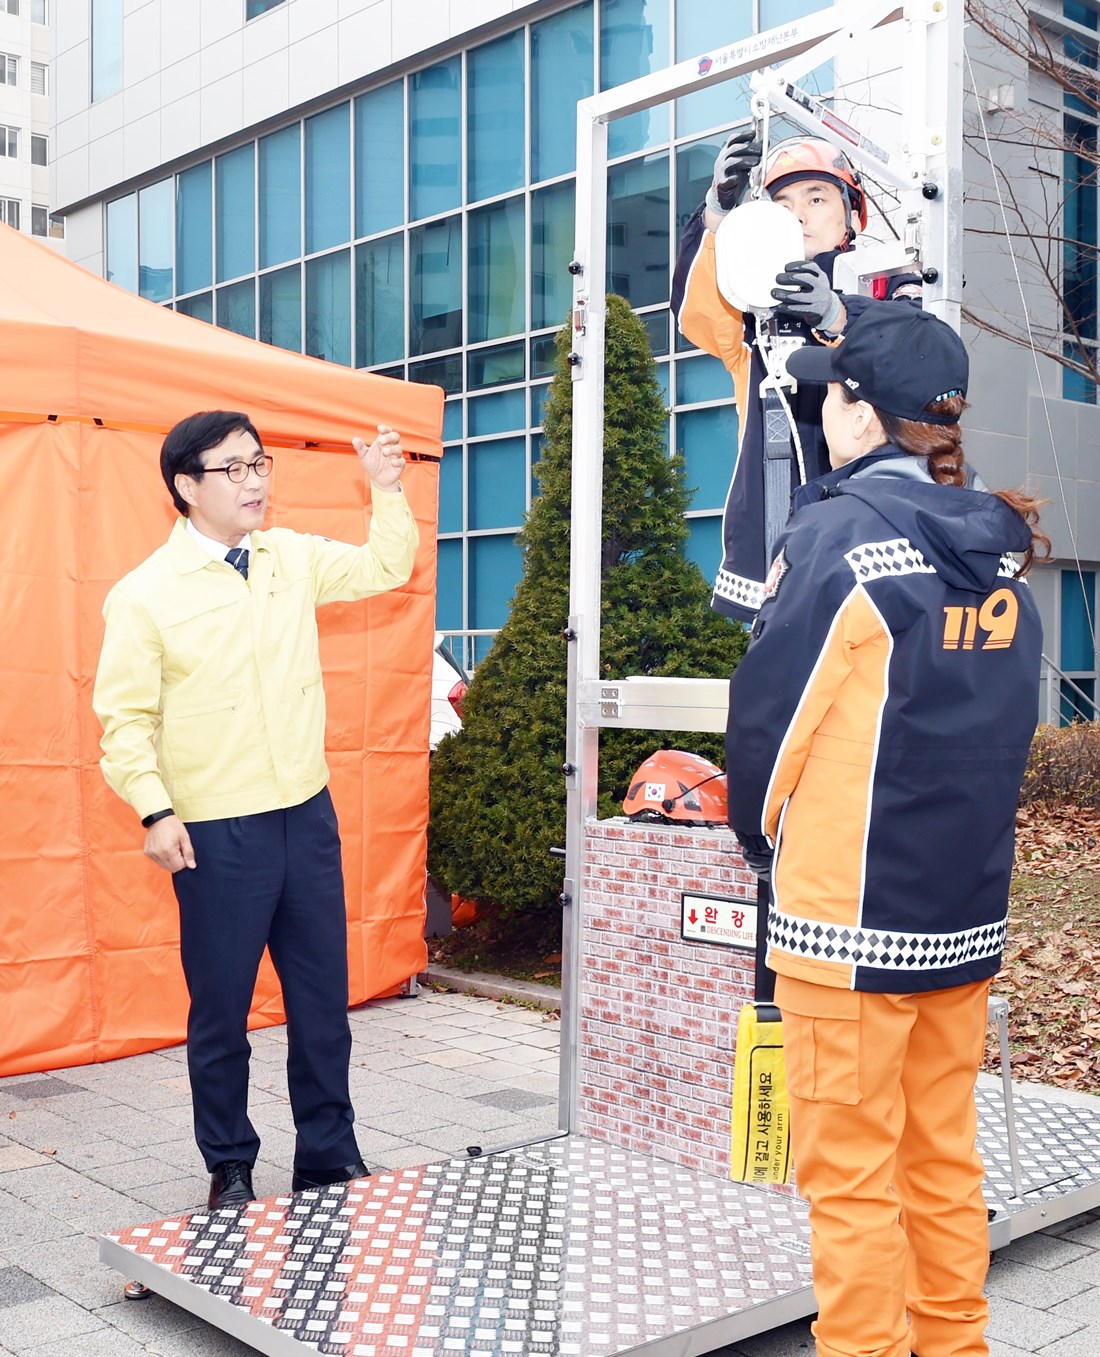 제409차 민방위 날인 27일, 서울의료원(서울 중랑구)에서 열린 화재 대피 훈련에서 류희인 재난안전관리본부장이 이동식 완강기 사용방법 시연에 참여하고 있다.